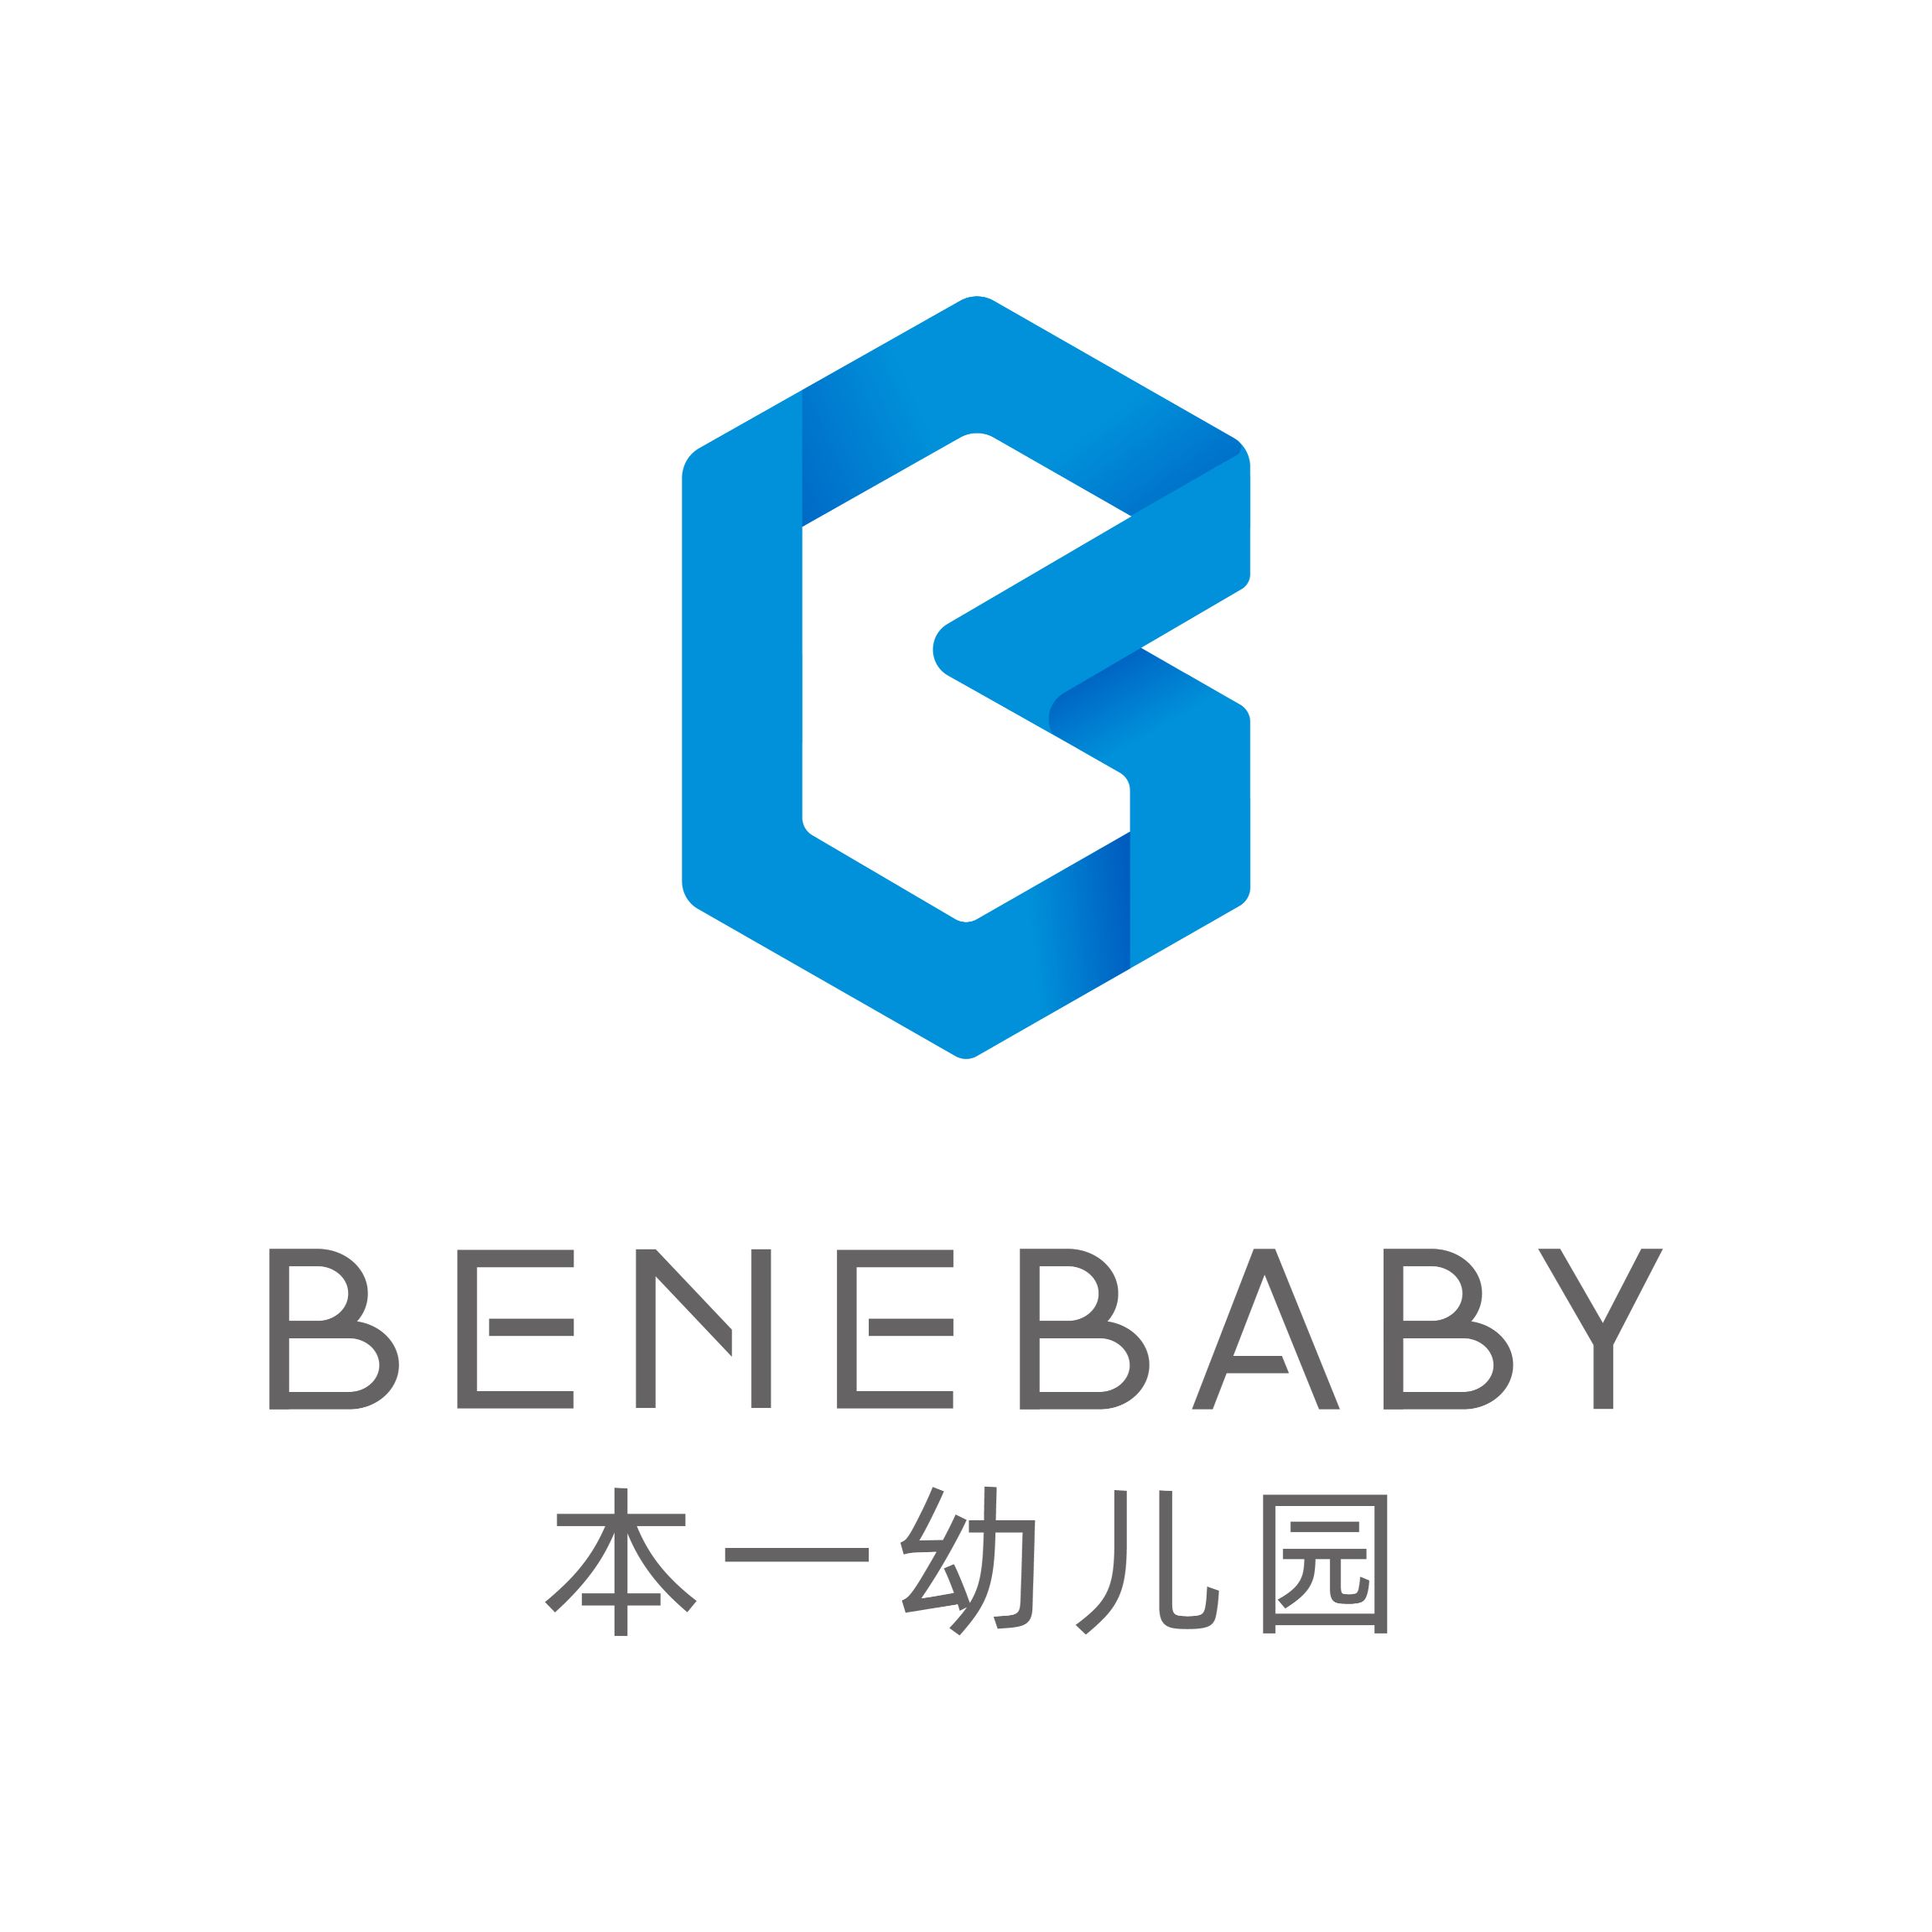 BeneBaby kindergarten logo